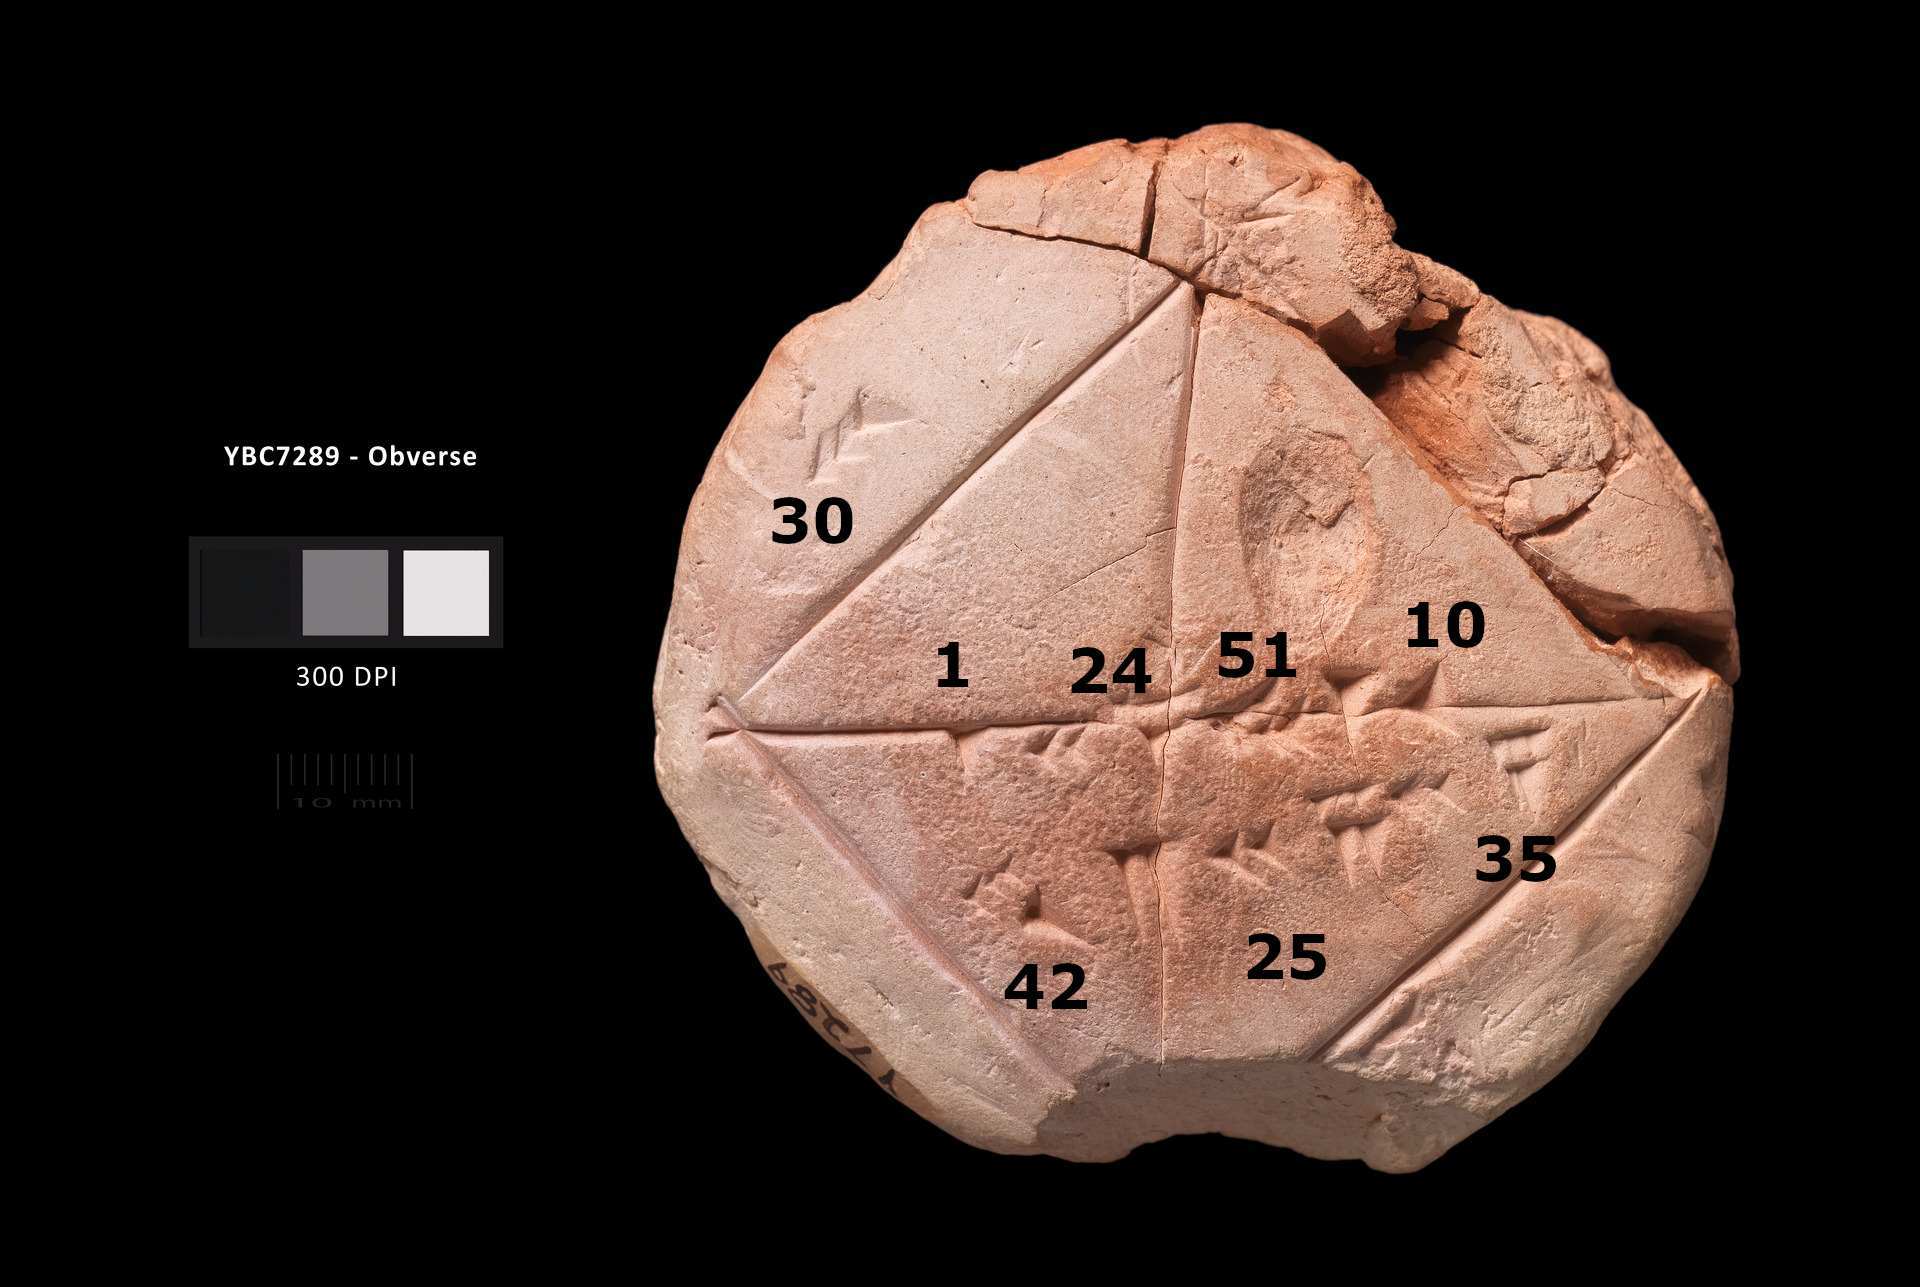 Photographie étiquetée de la tablette Yale Babylonian Collection YBC 7289